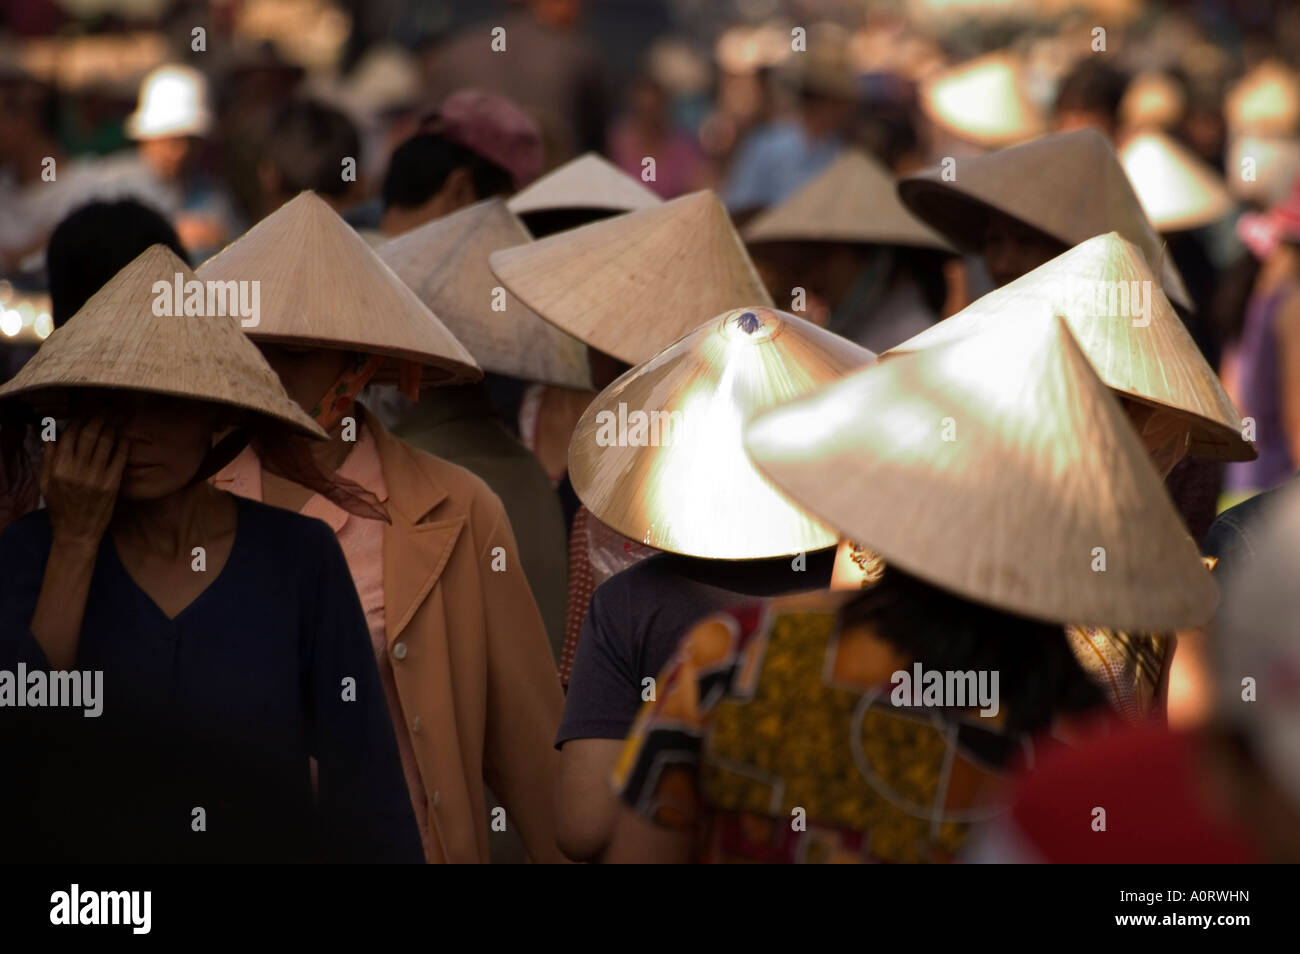 Les femmes portant des chapeaux coniques marché Binh Tay Ho Chi Minh City Saigon Vietnam Asie Asie du sud-est Banque D'Images